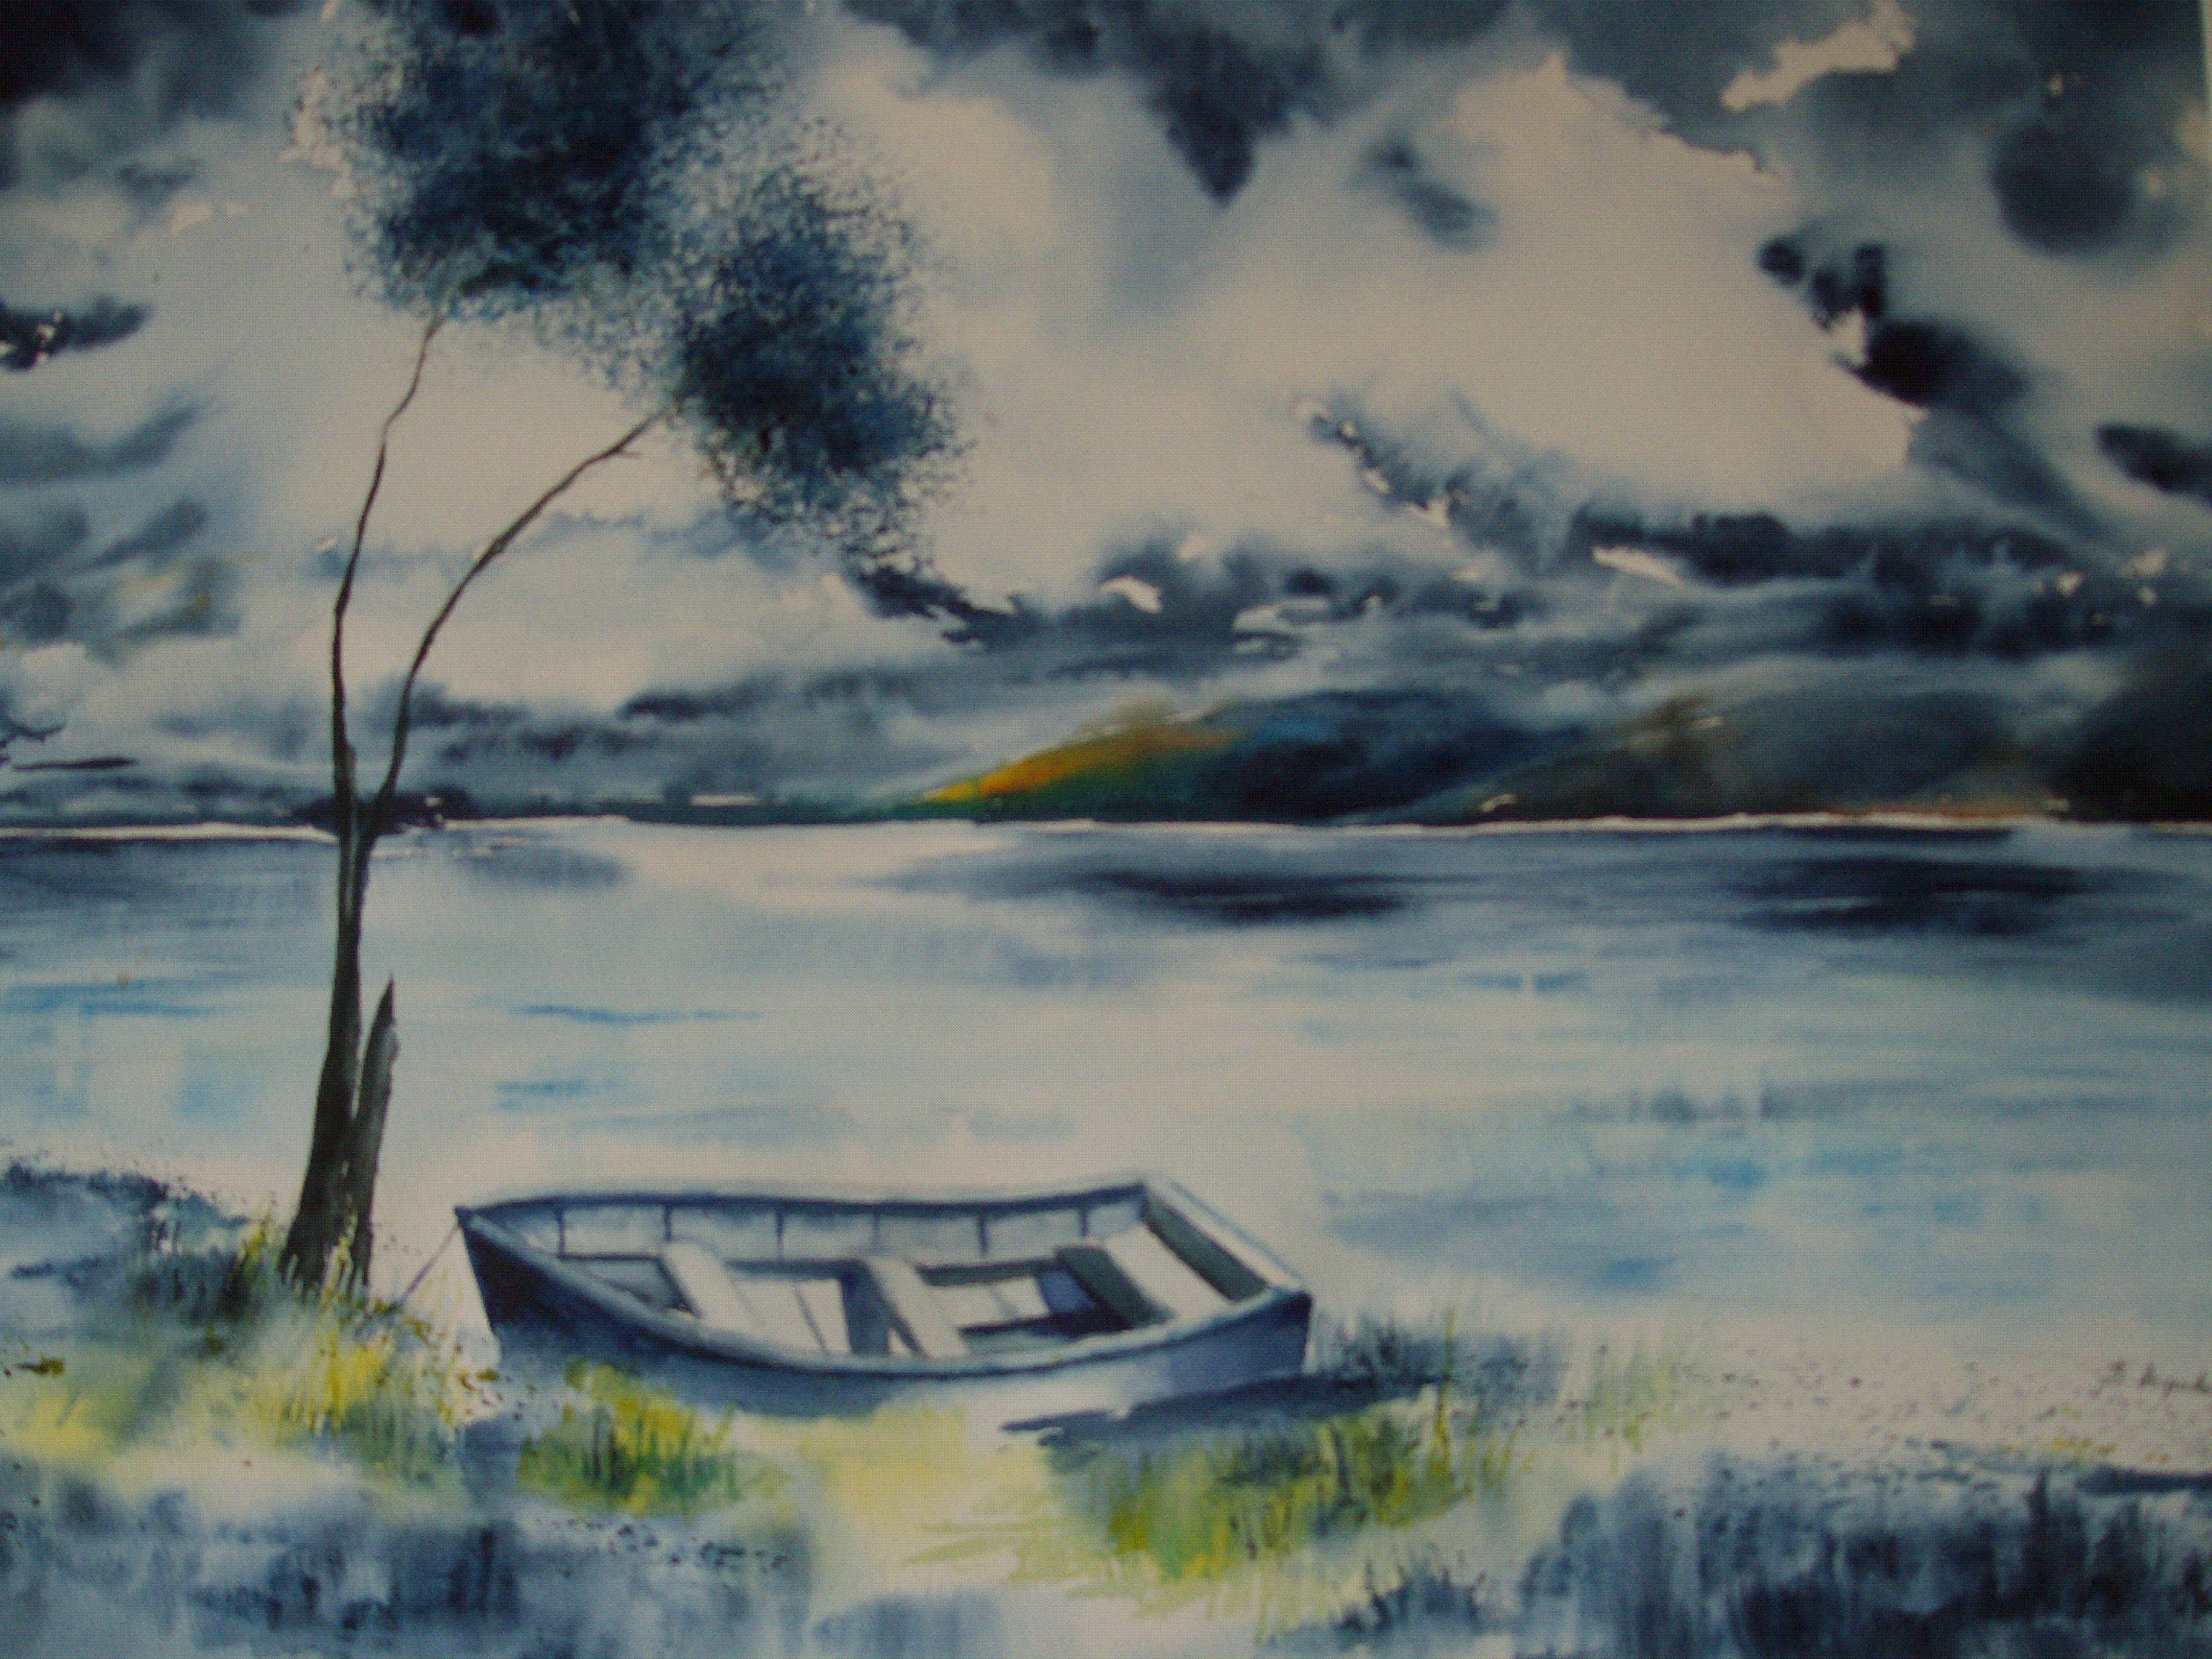 La barque sur le lac